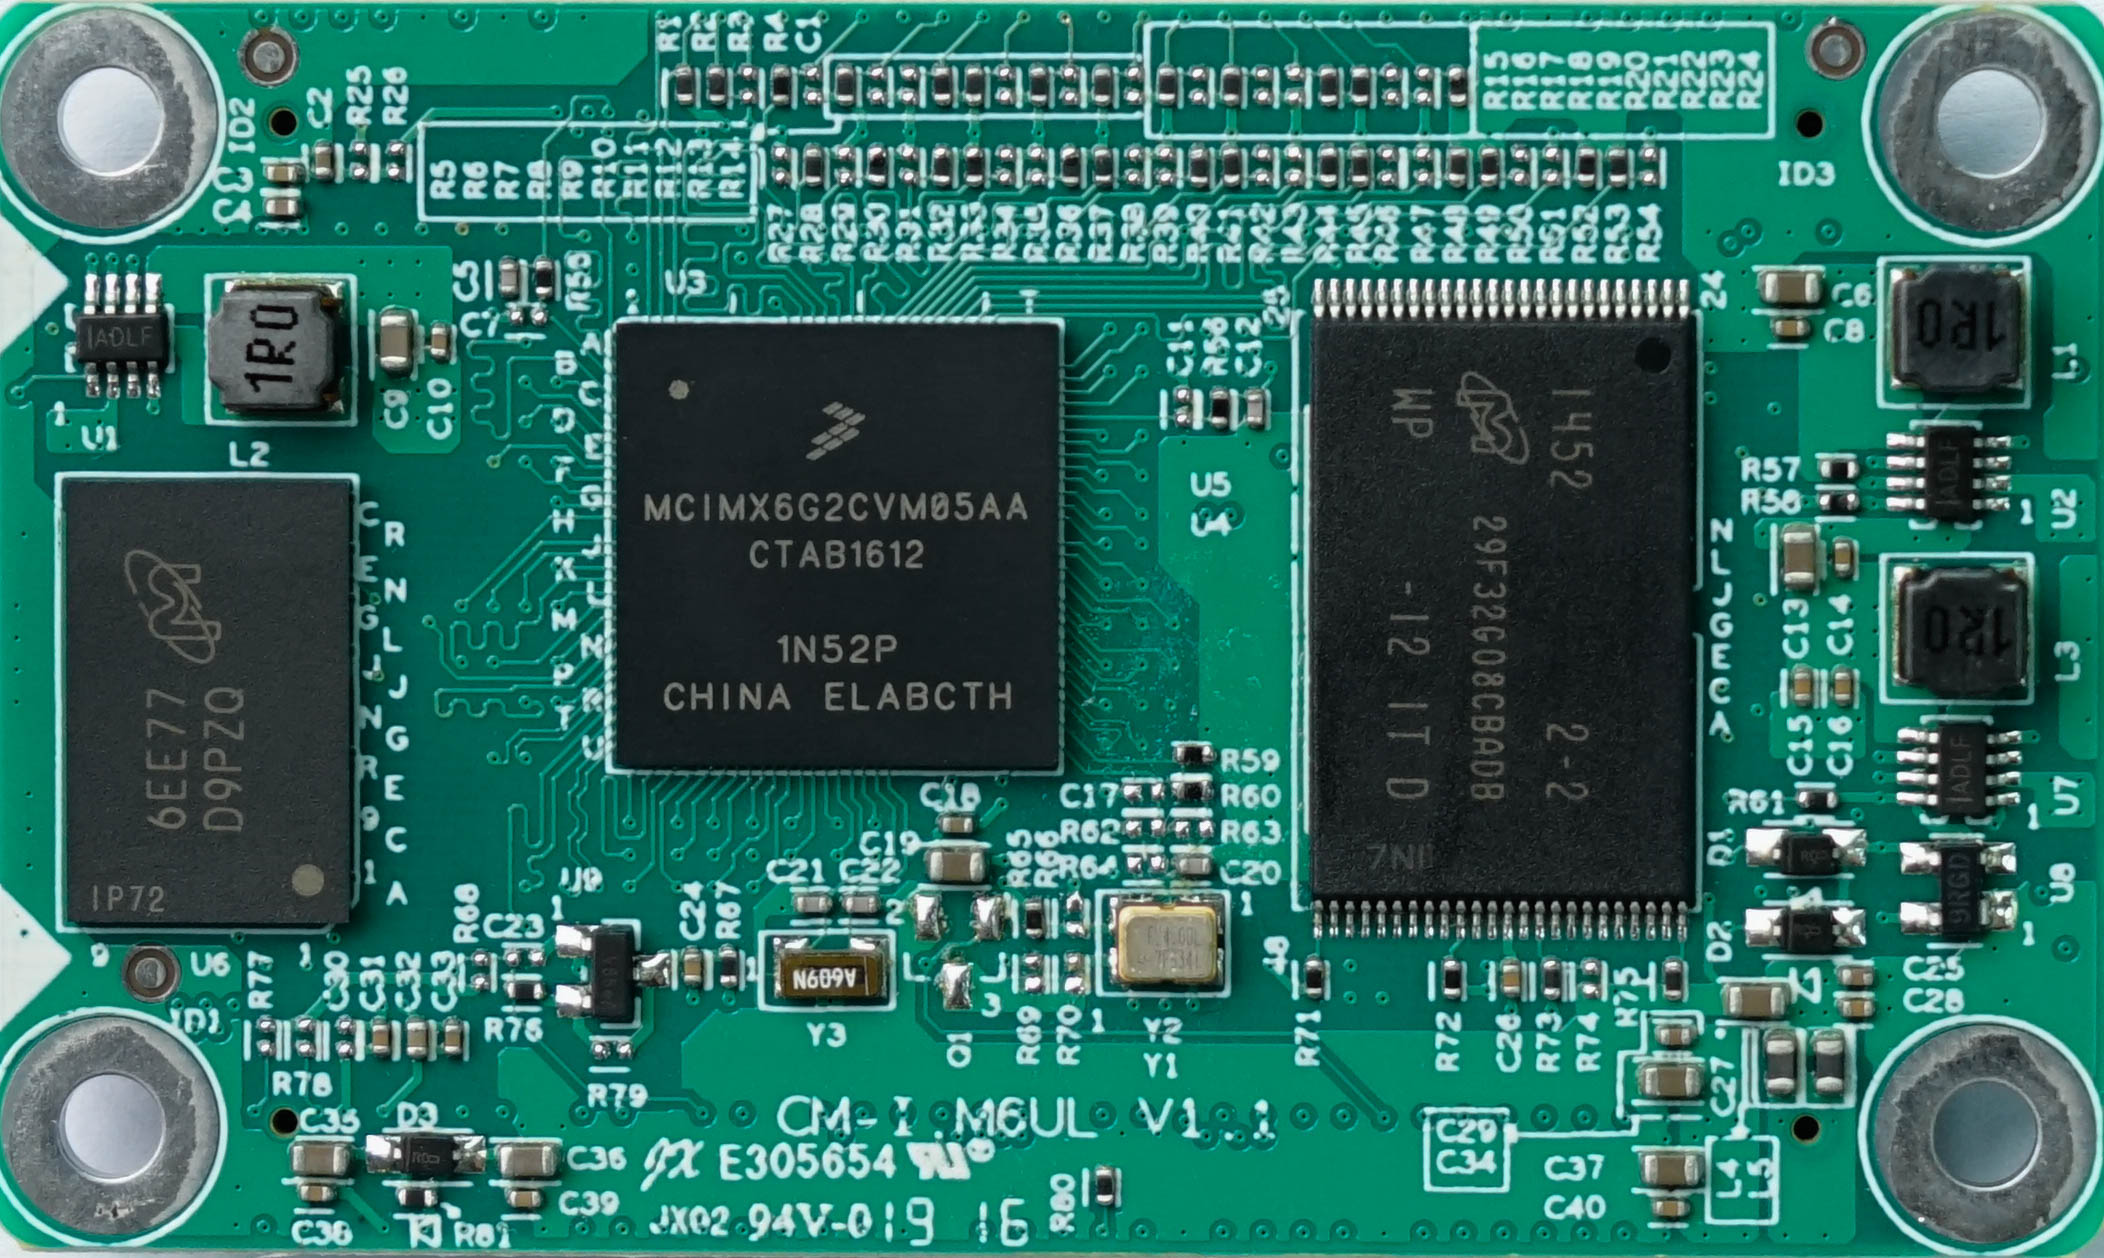 嵌智捷科技CM-i.MX6UL核心板嵌入式主板介绍